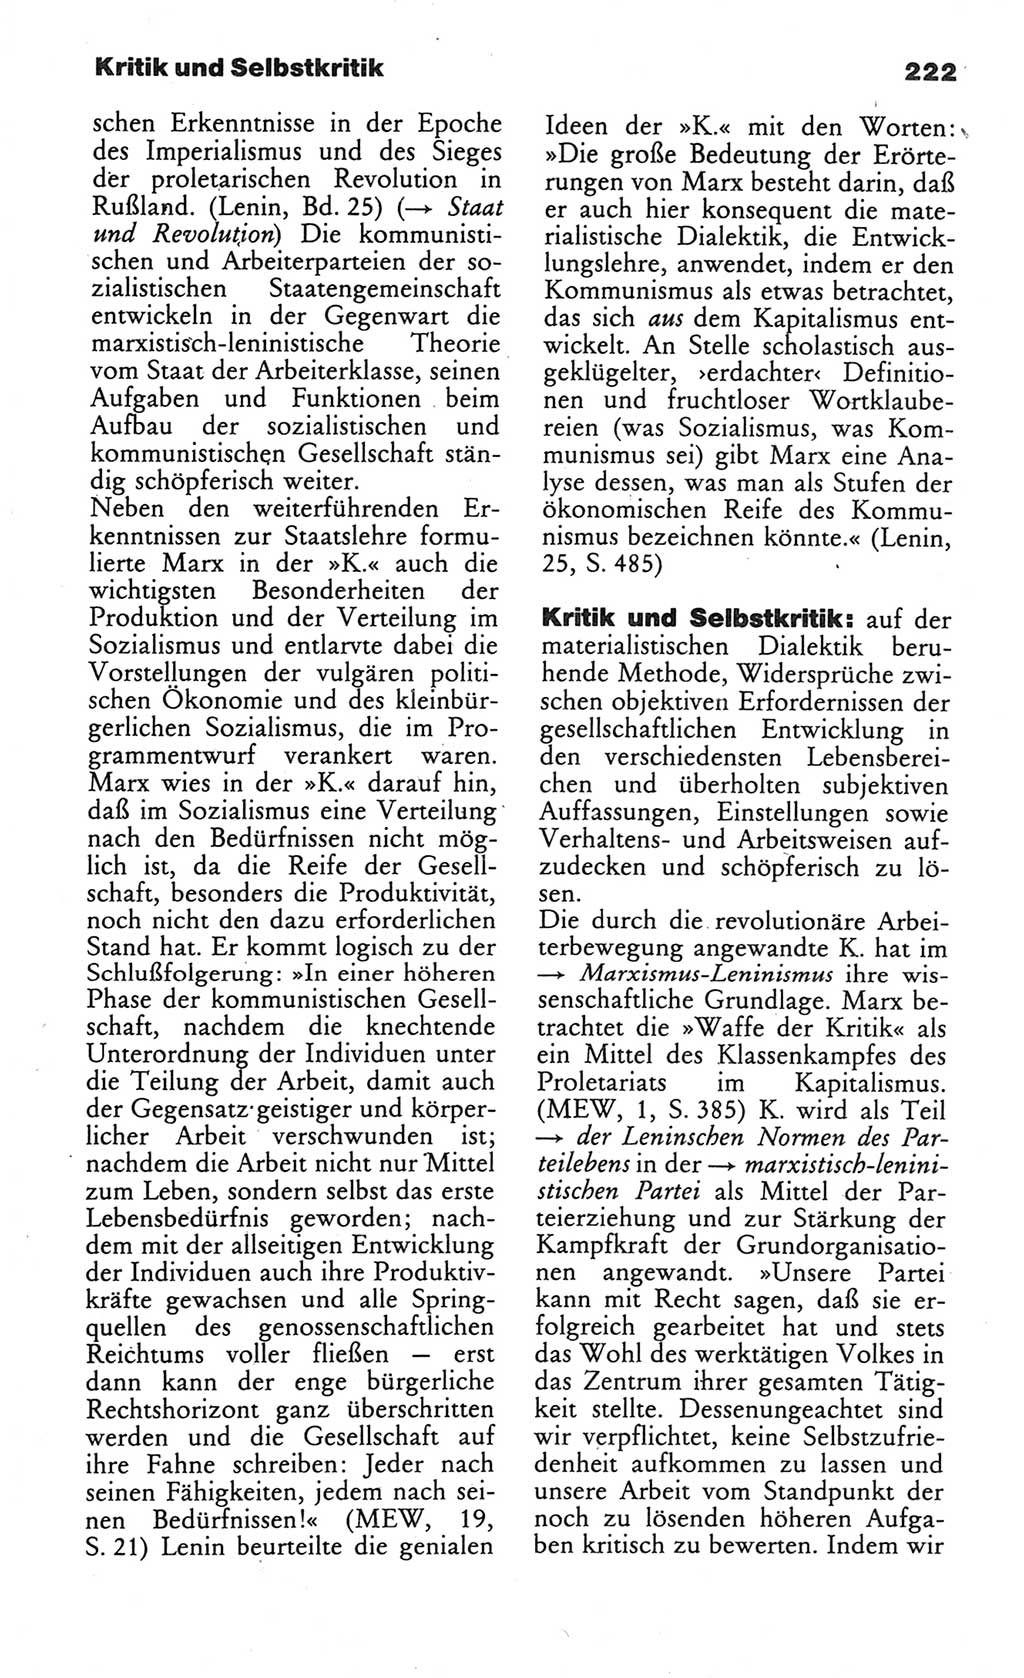 Wörterbuch des wissenschaftlichen Kommunismus [Deutsche Demokratische Republik (DDR)] 1984, Seite 222 (Wb. wiss. Komm. DDR 1984, S. 222)